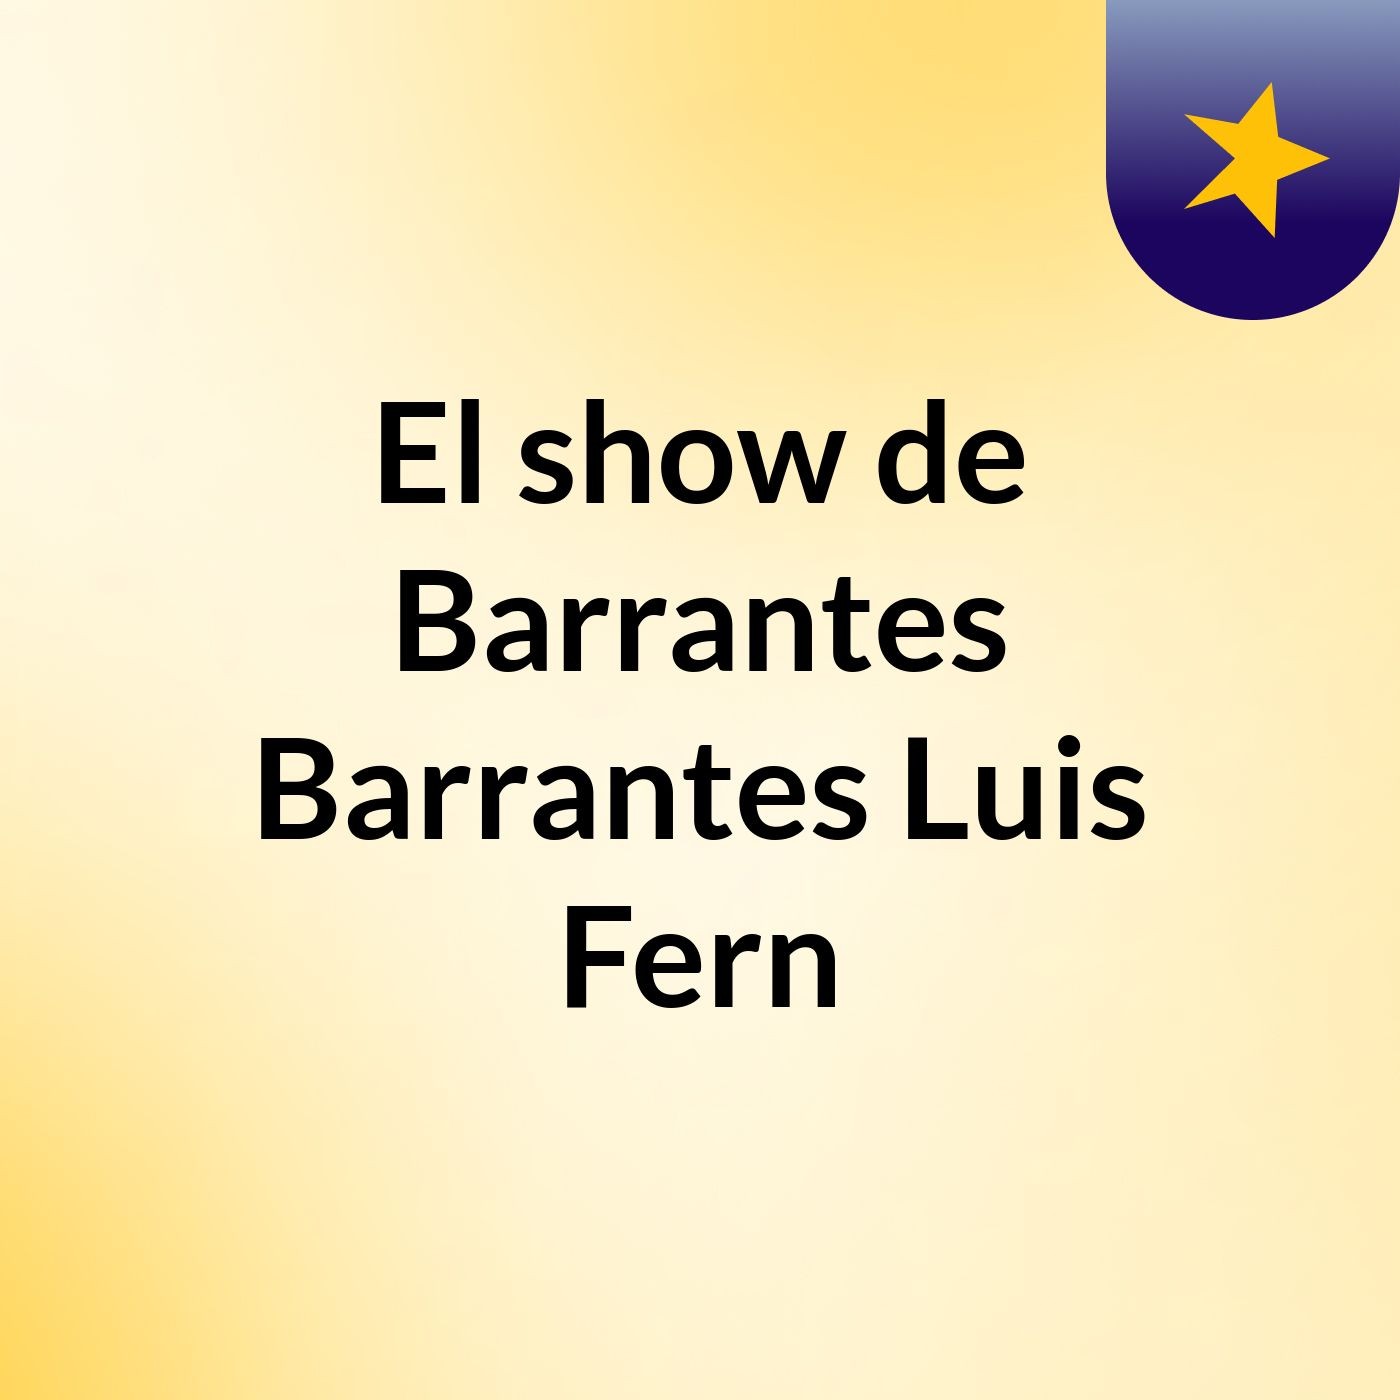 El show de Barrantes Barrantes Luis Fern